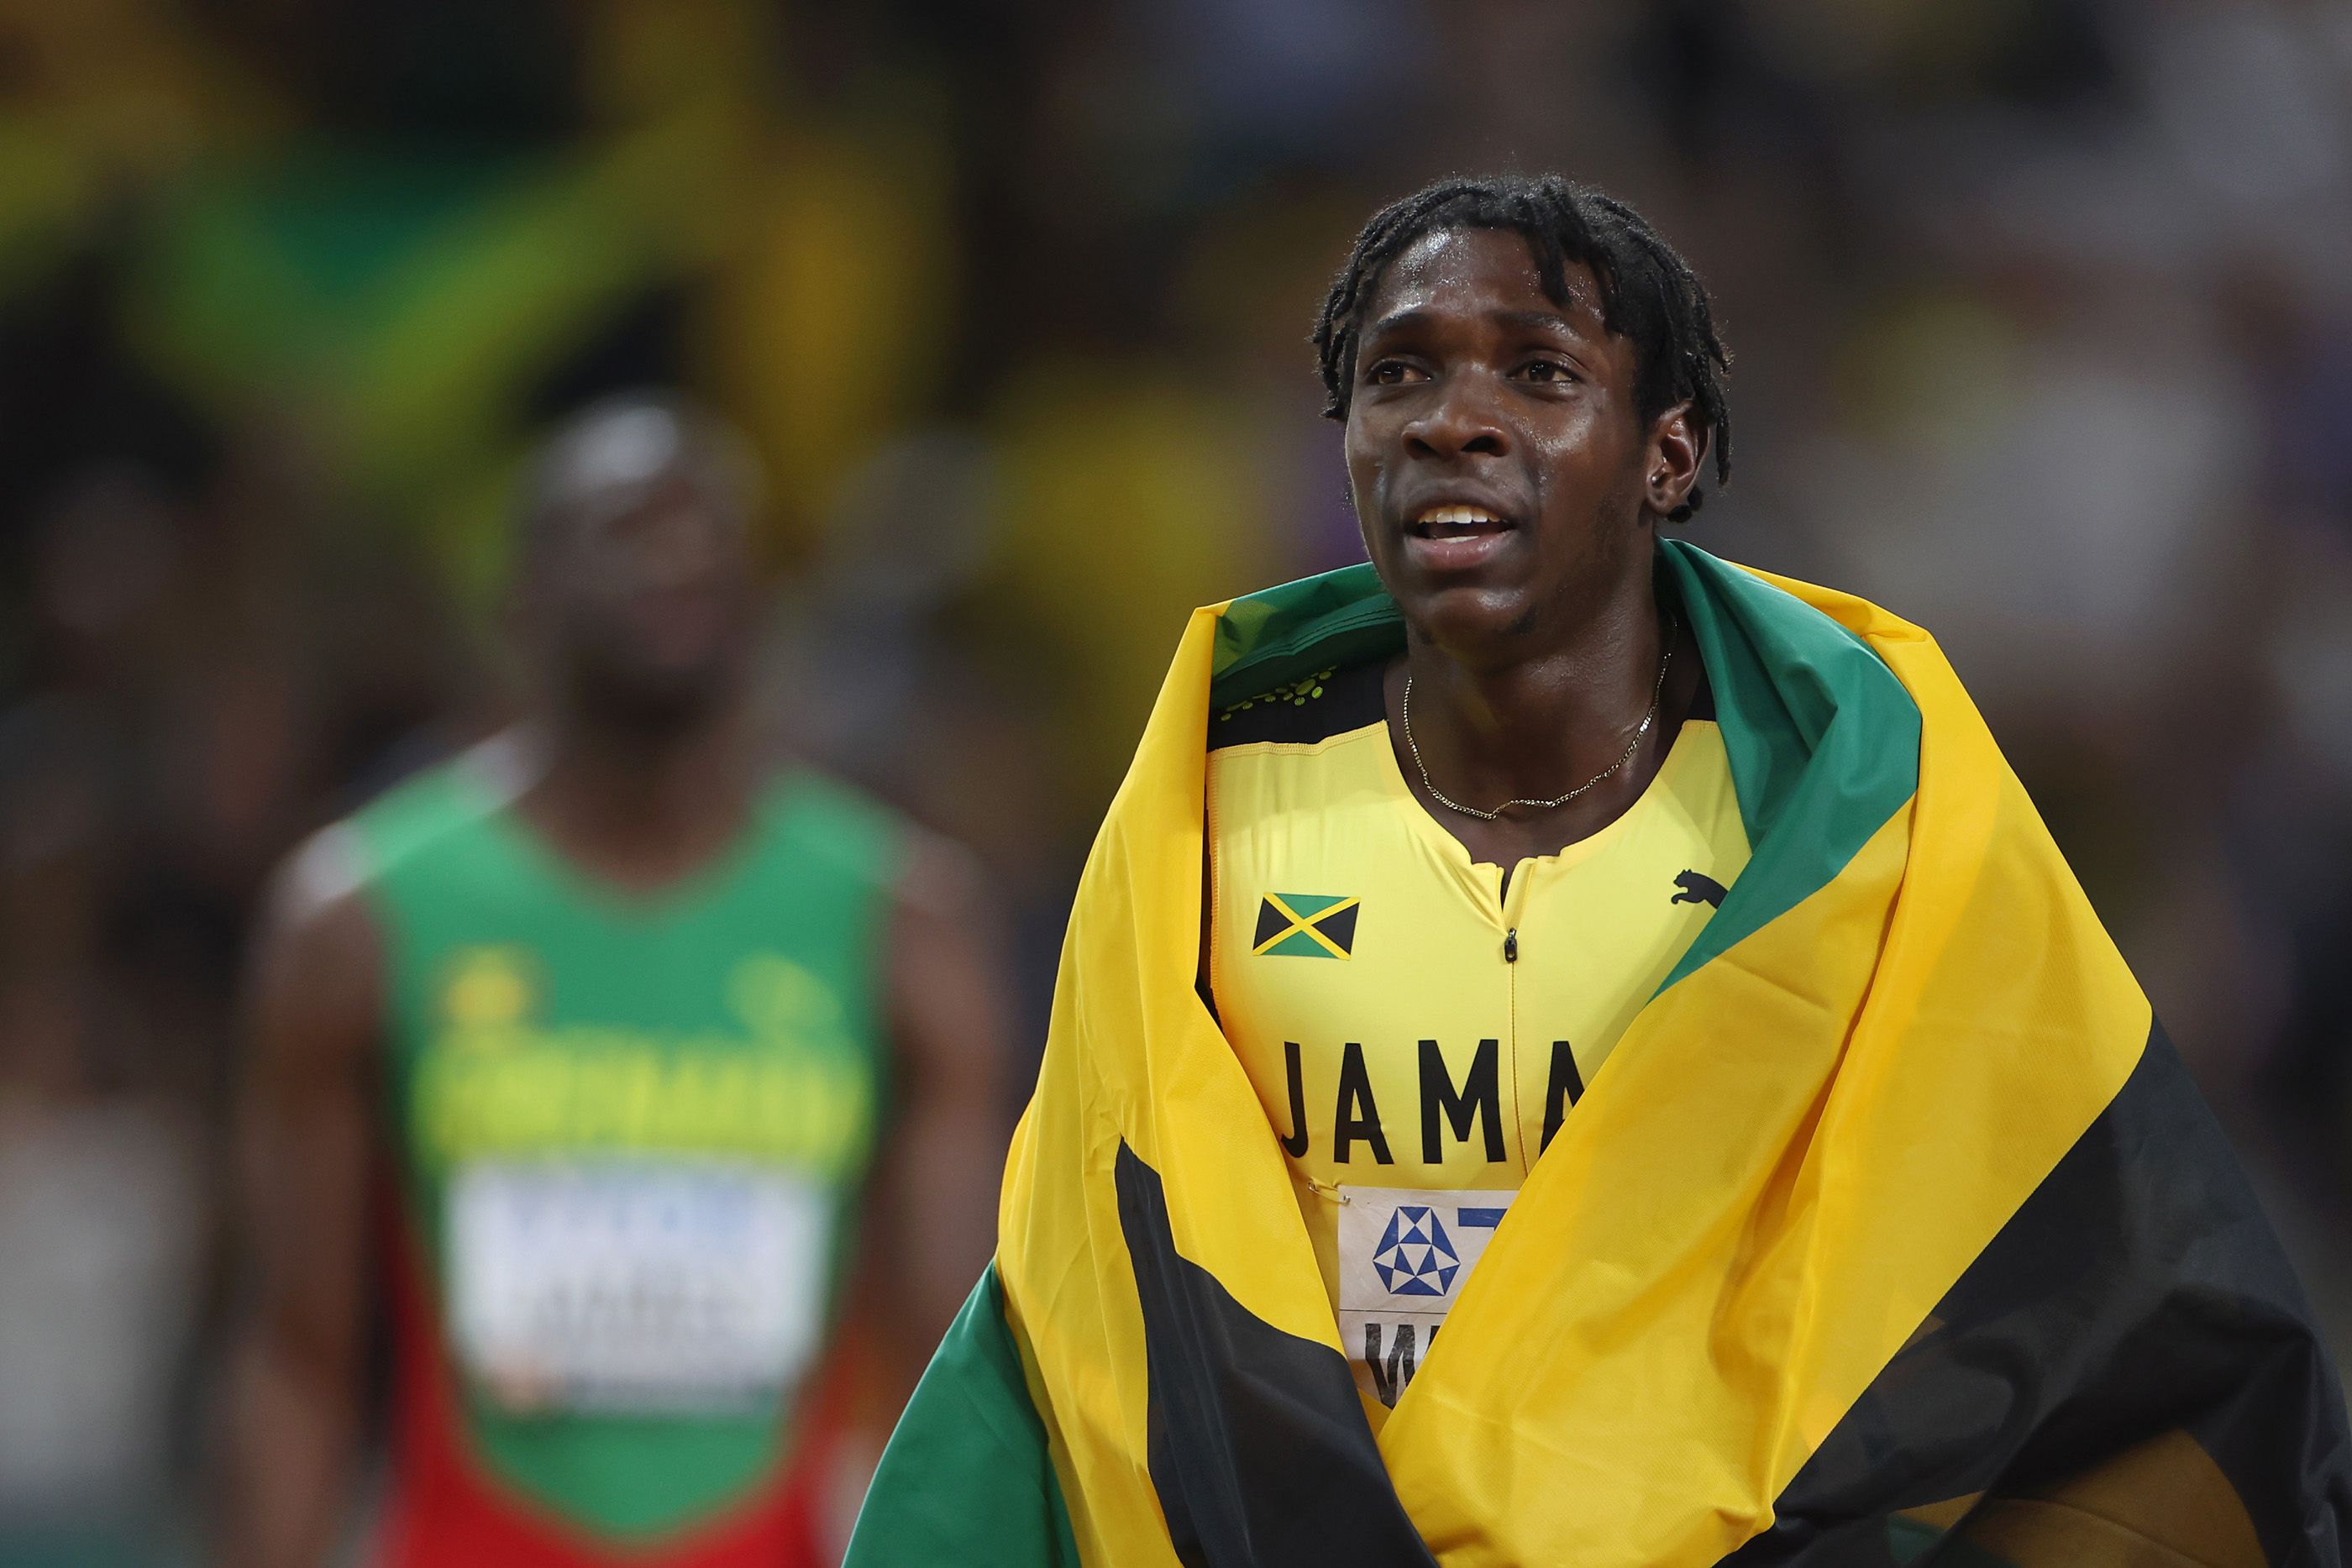 Jamaica's world 400m champion Antonio Watson